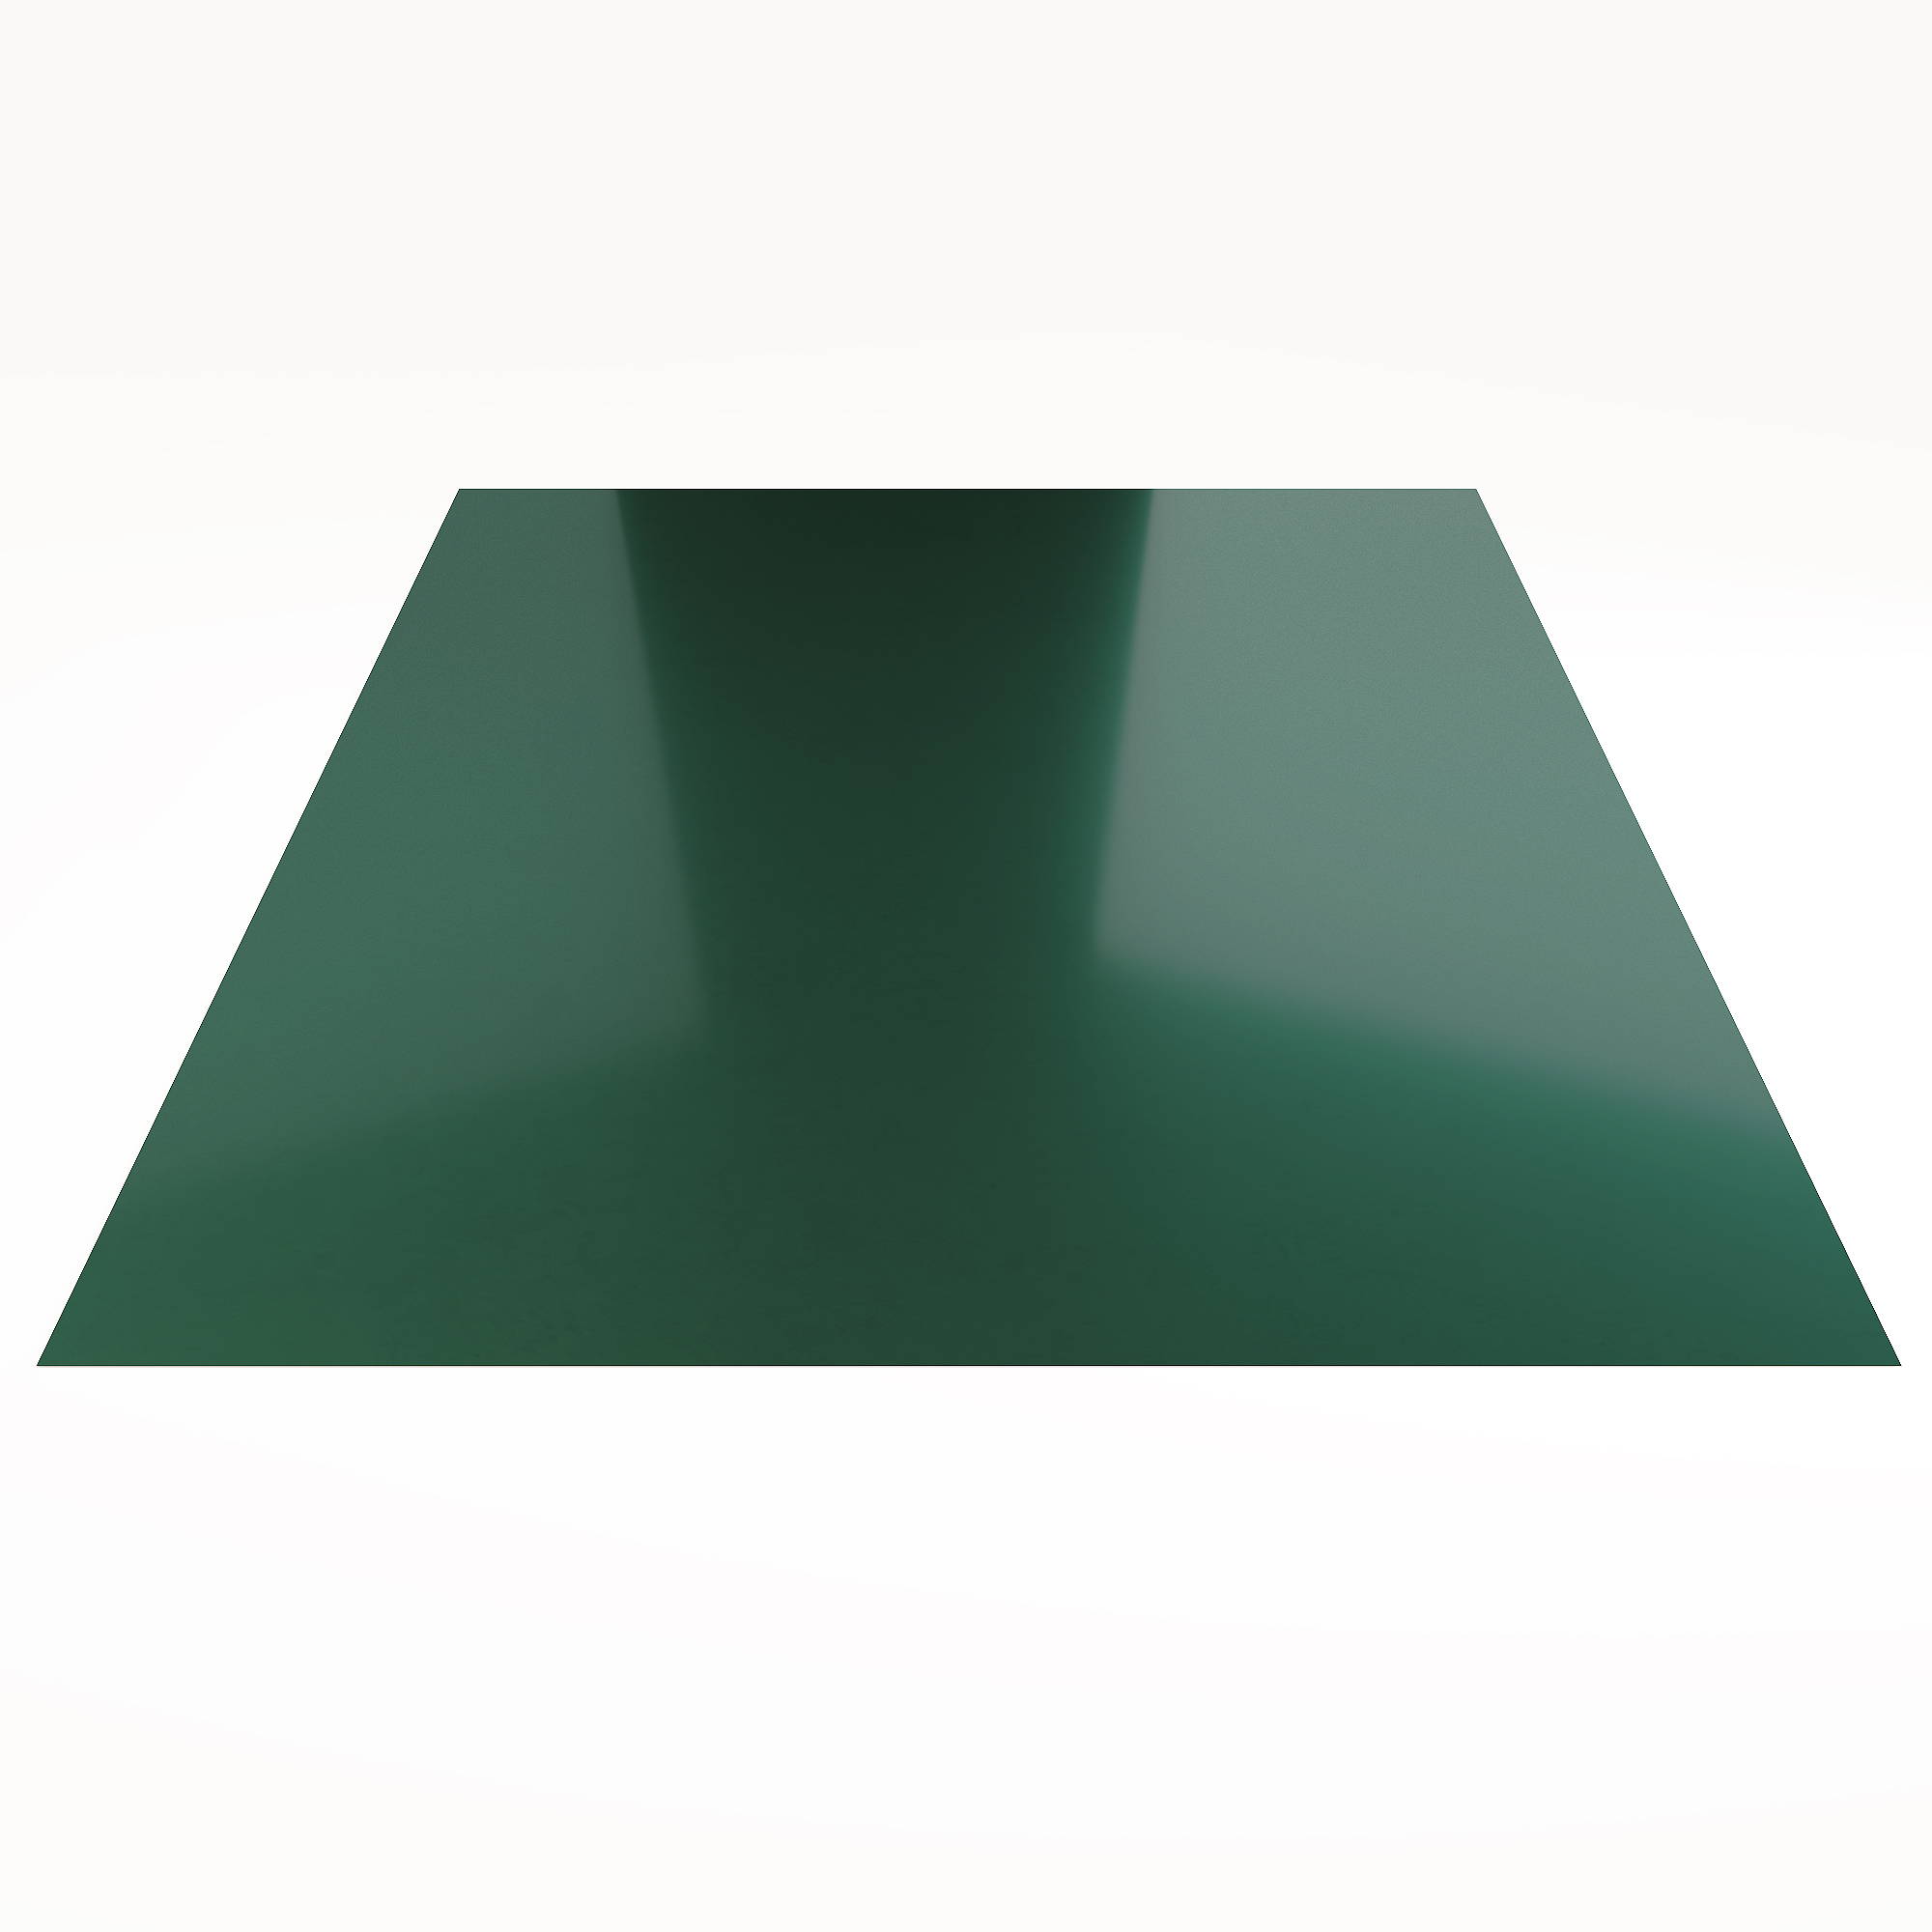 Гладкий лист Гладкий полиэстер RAL 6005 (Зелёный мох) 1500*1250*0,35 односторонний ламинированный